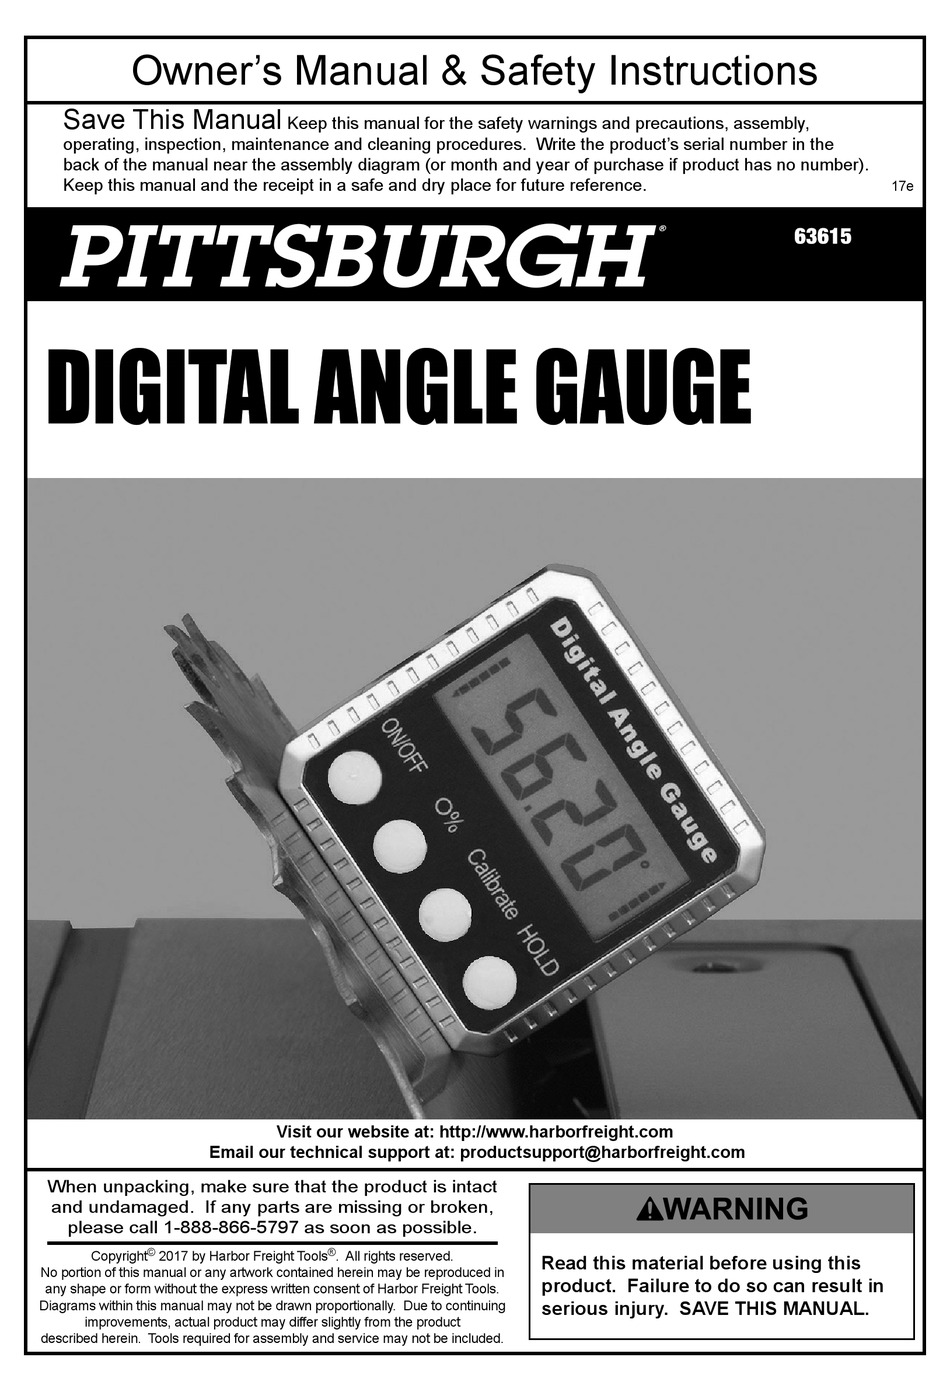 Pittsburgh Digital Angle Gauge